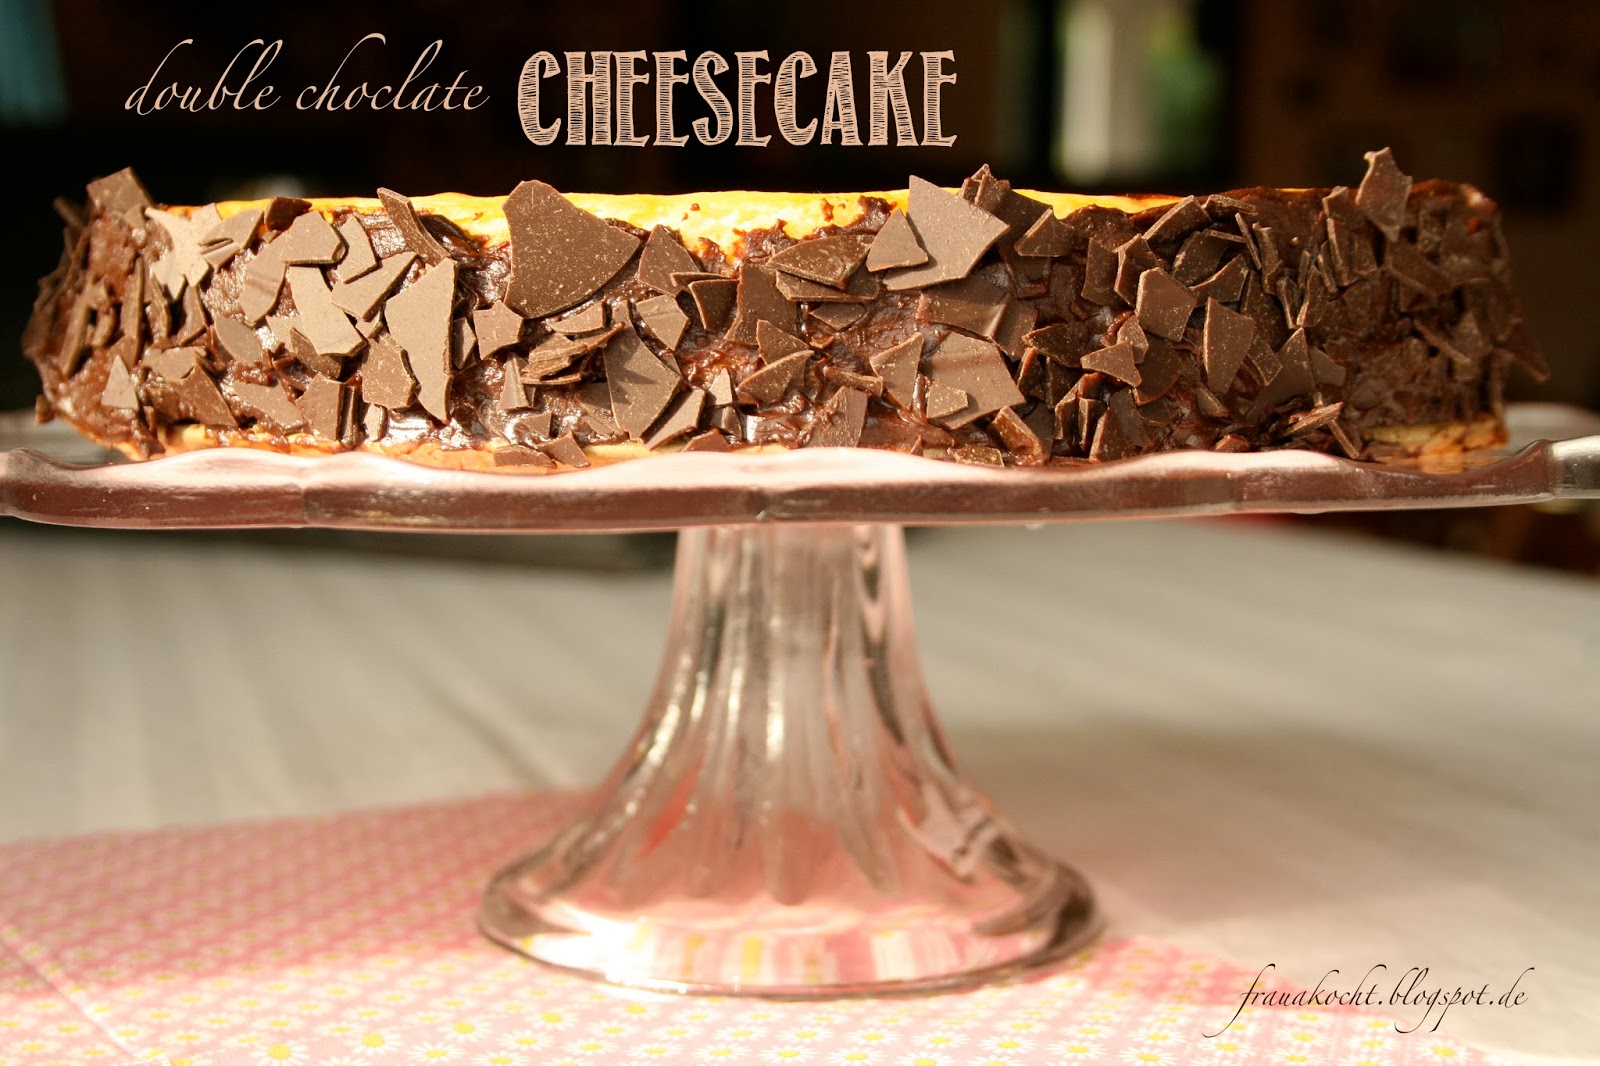 Frau A. kocht : double choclate cheesecake für die Familienfeier